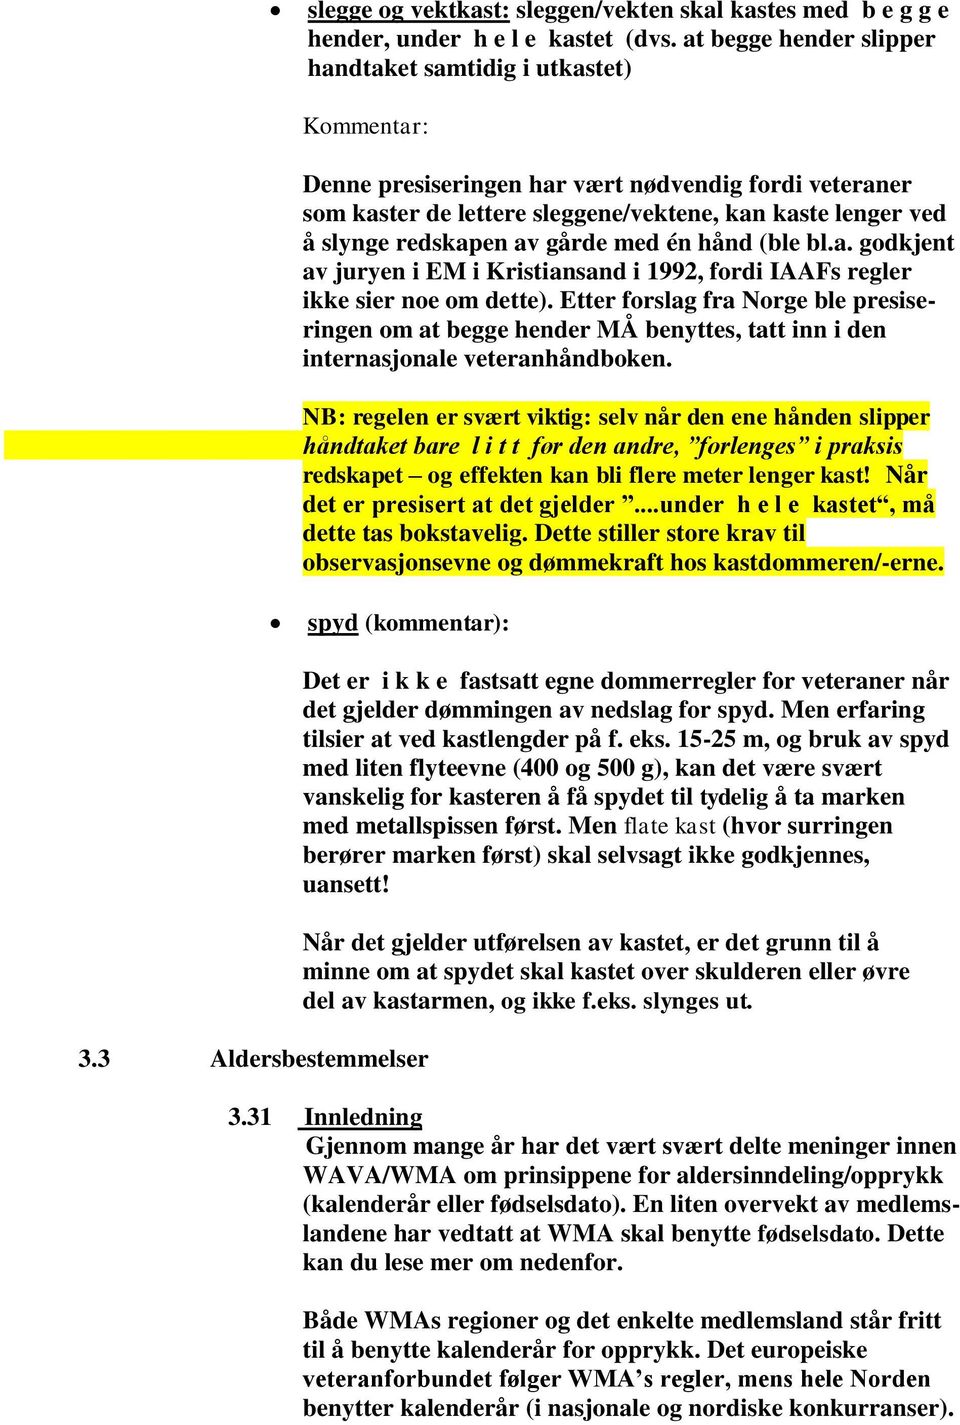 redskapen av gårde med én hånd (ble bl.a. godkjent av juryen i EM i Kristiansand i 1992, fordi IAAFs regler ikke sier noe om dette).